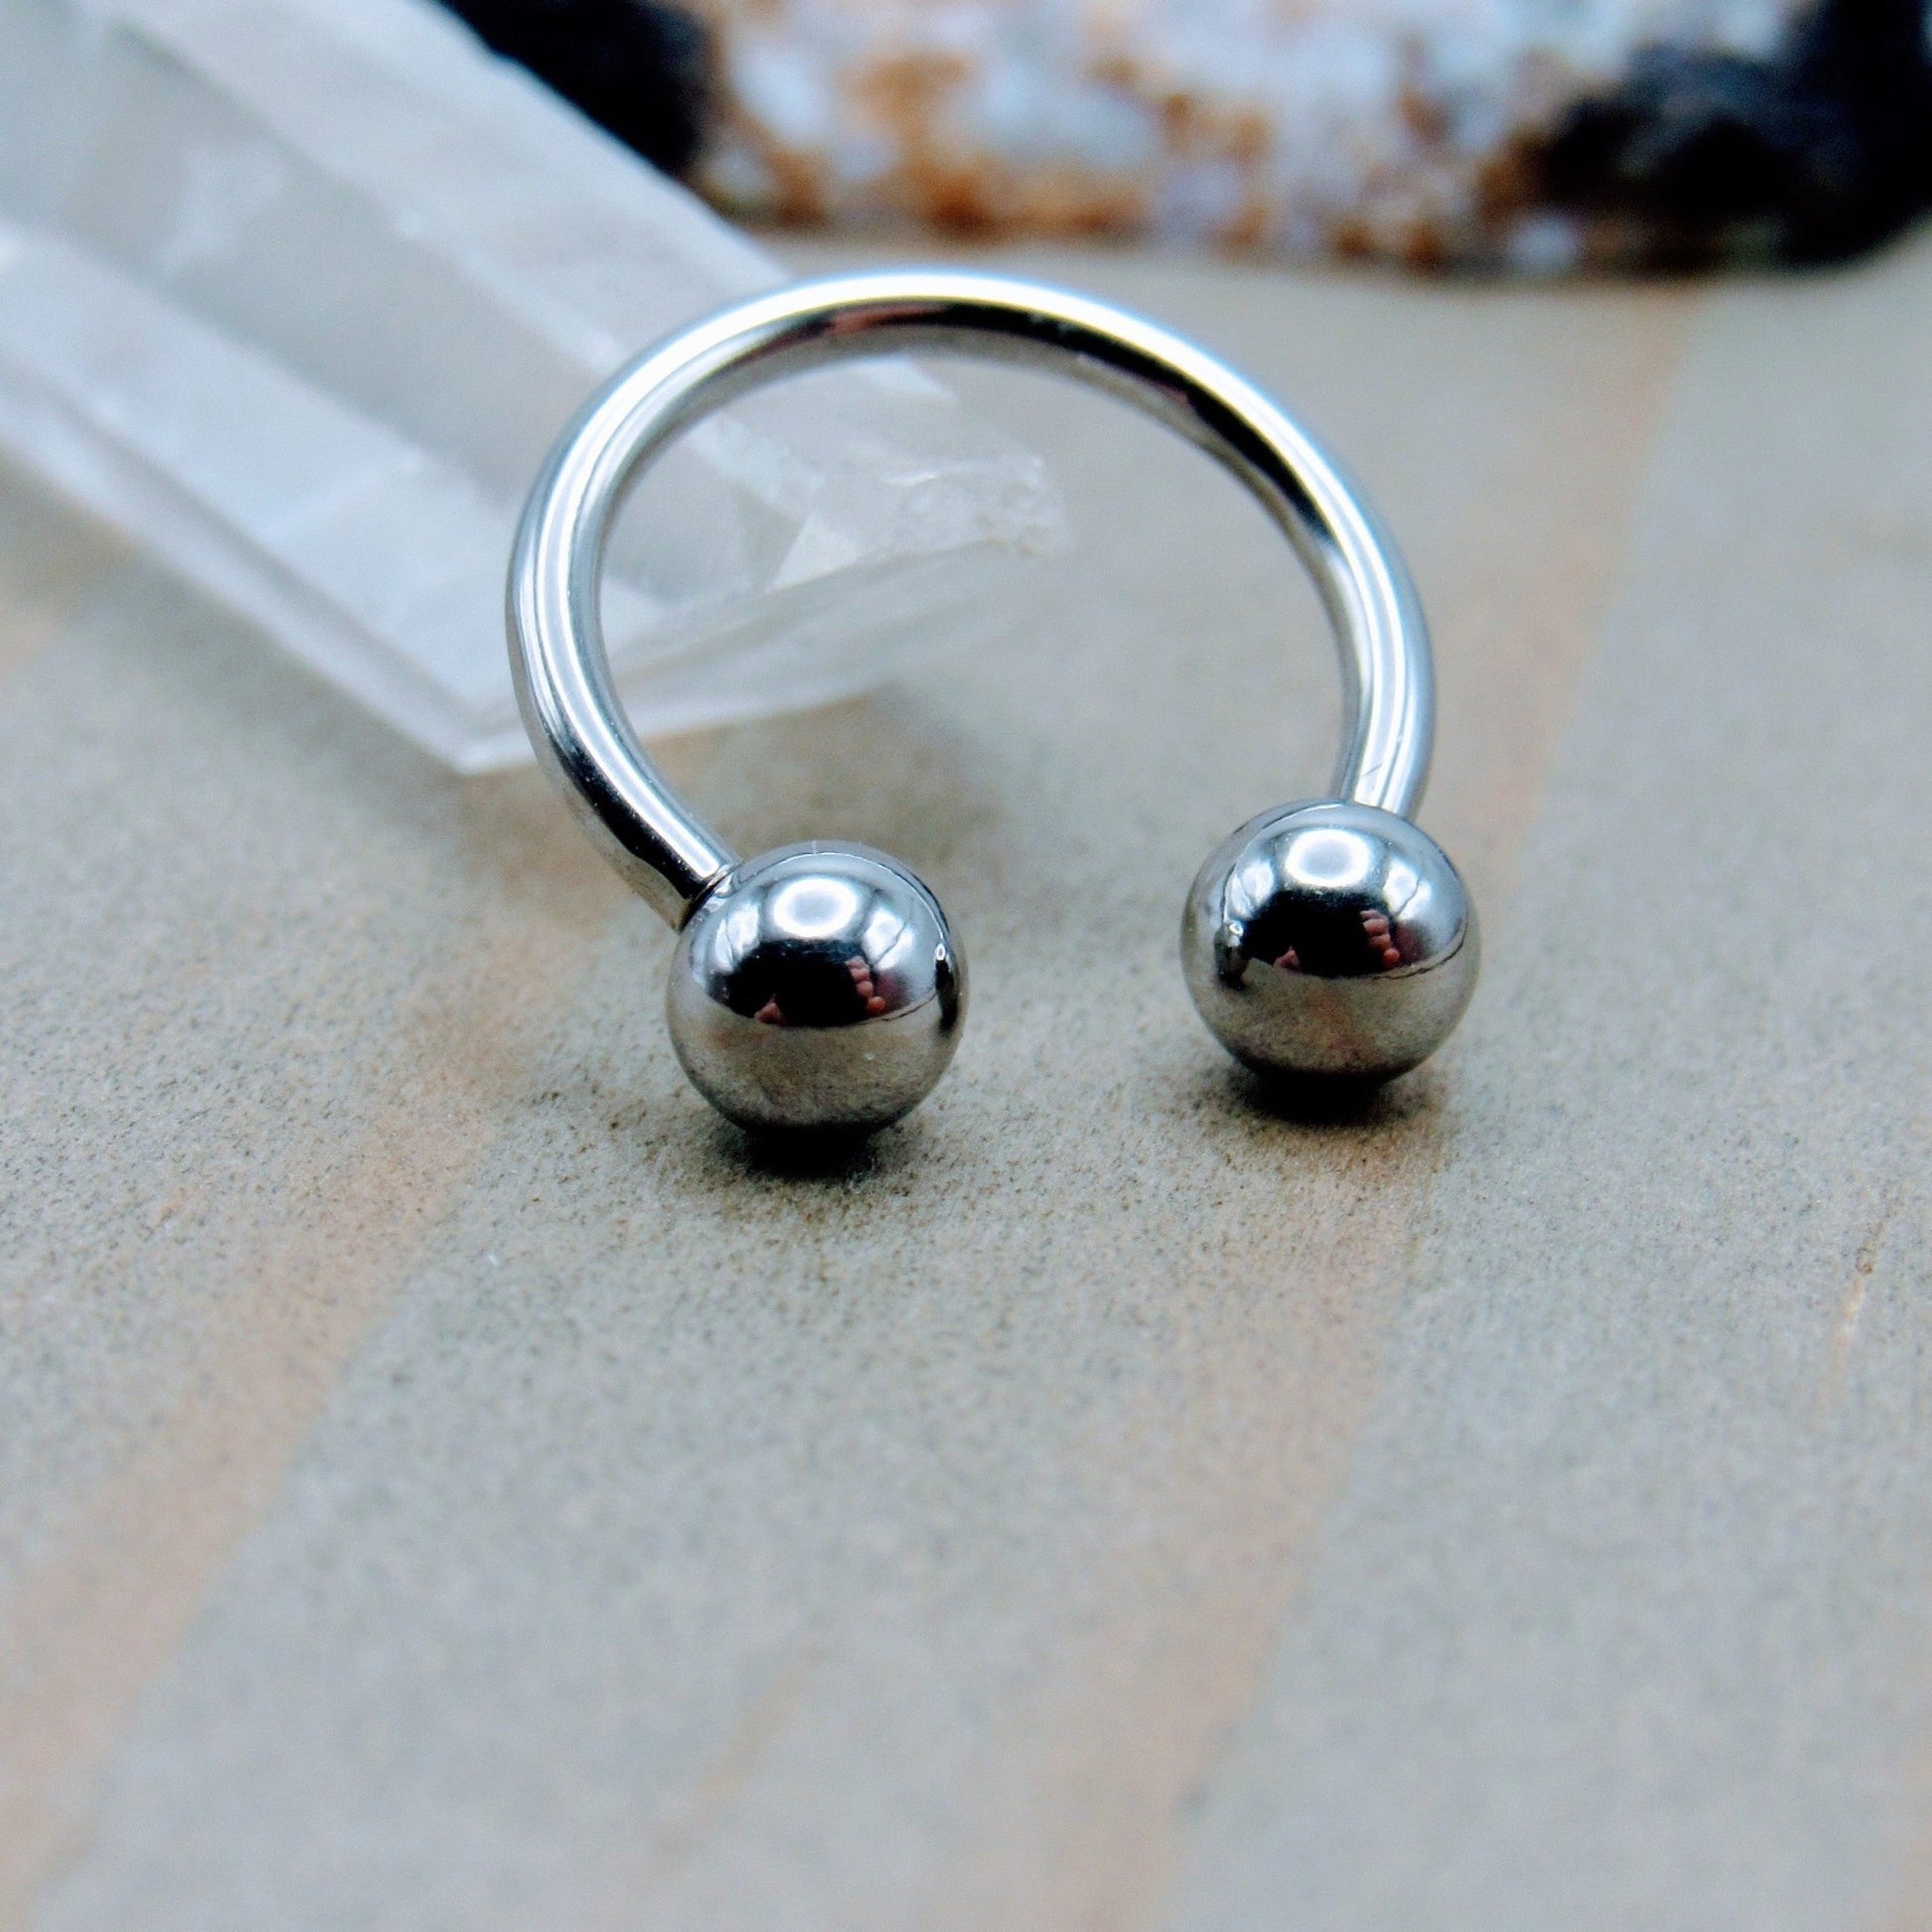 Stainless steel horseshoe ear piercing hoop earring 16g 3/8" diameter –  Siren Body Jewelry